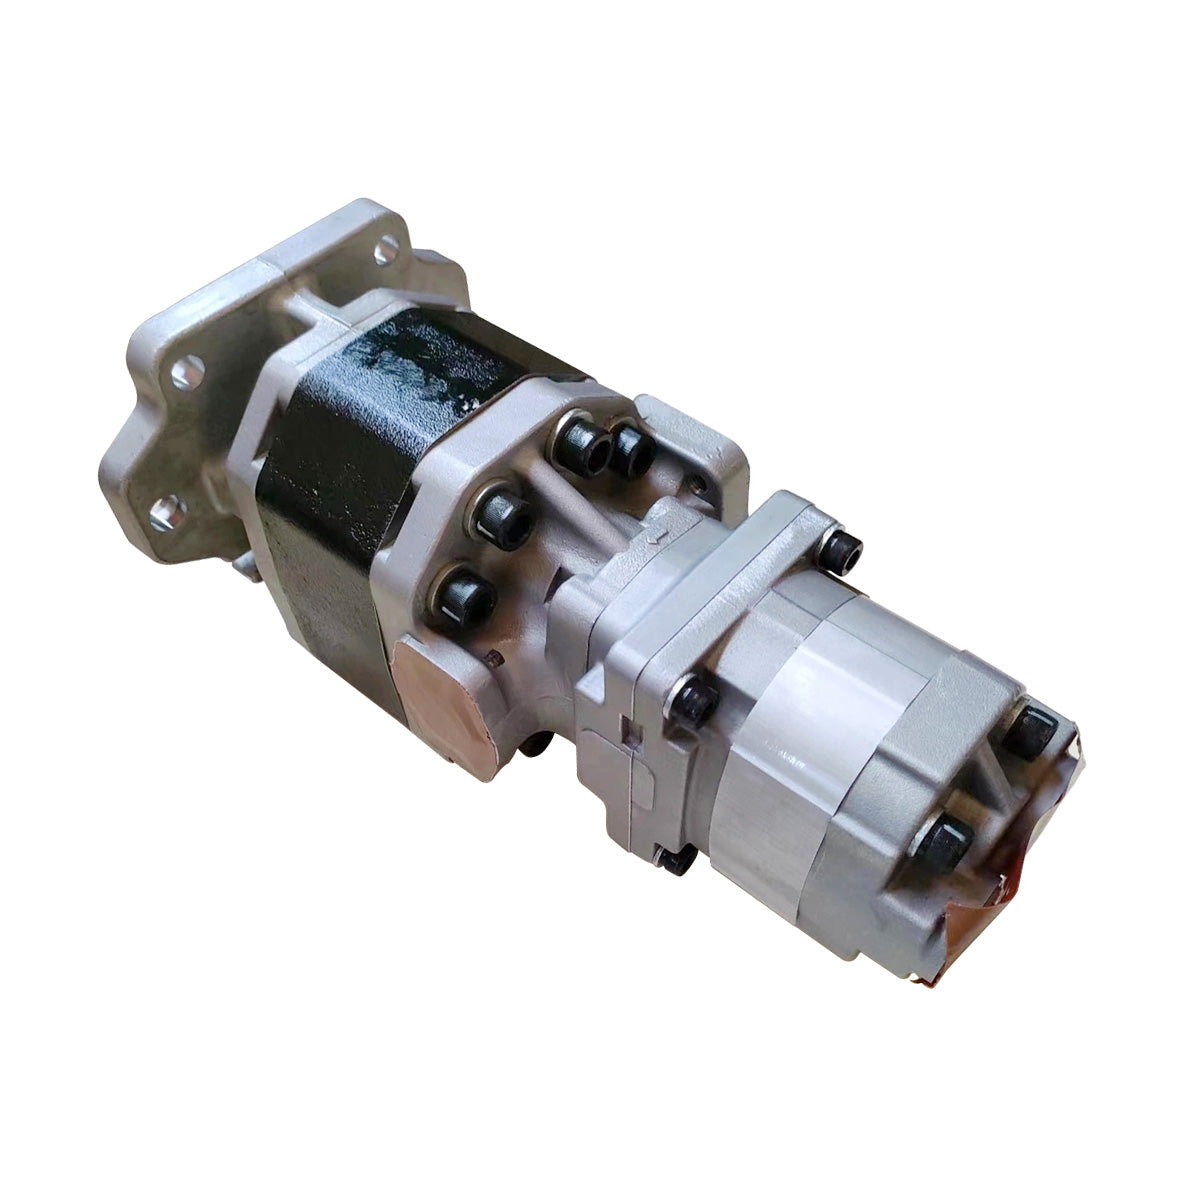 705-95-05140 Hydraulic Gear Pump Assy for Komatsu HD465-7R HD465-7 HD605-7